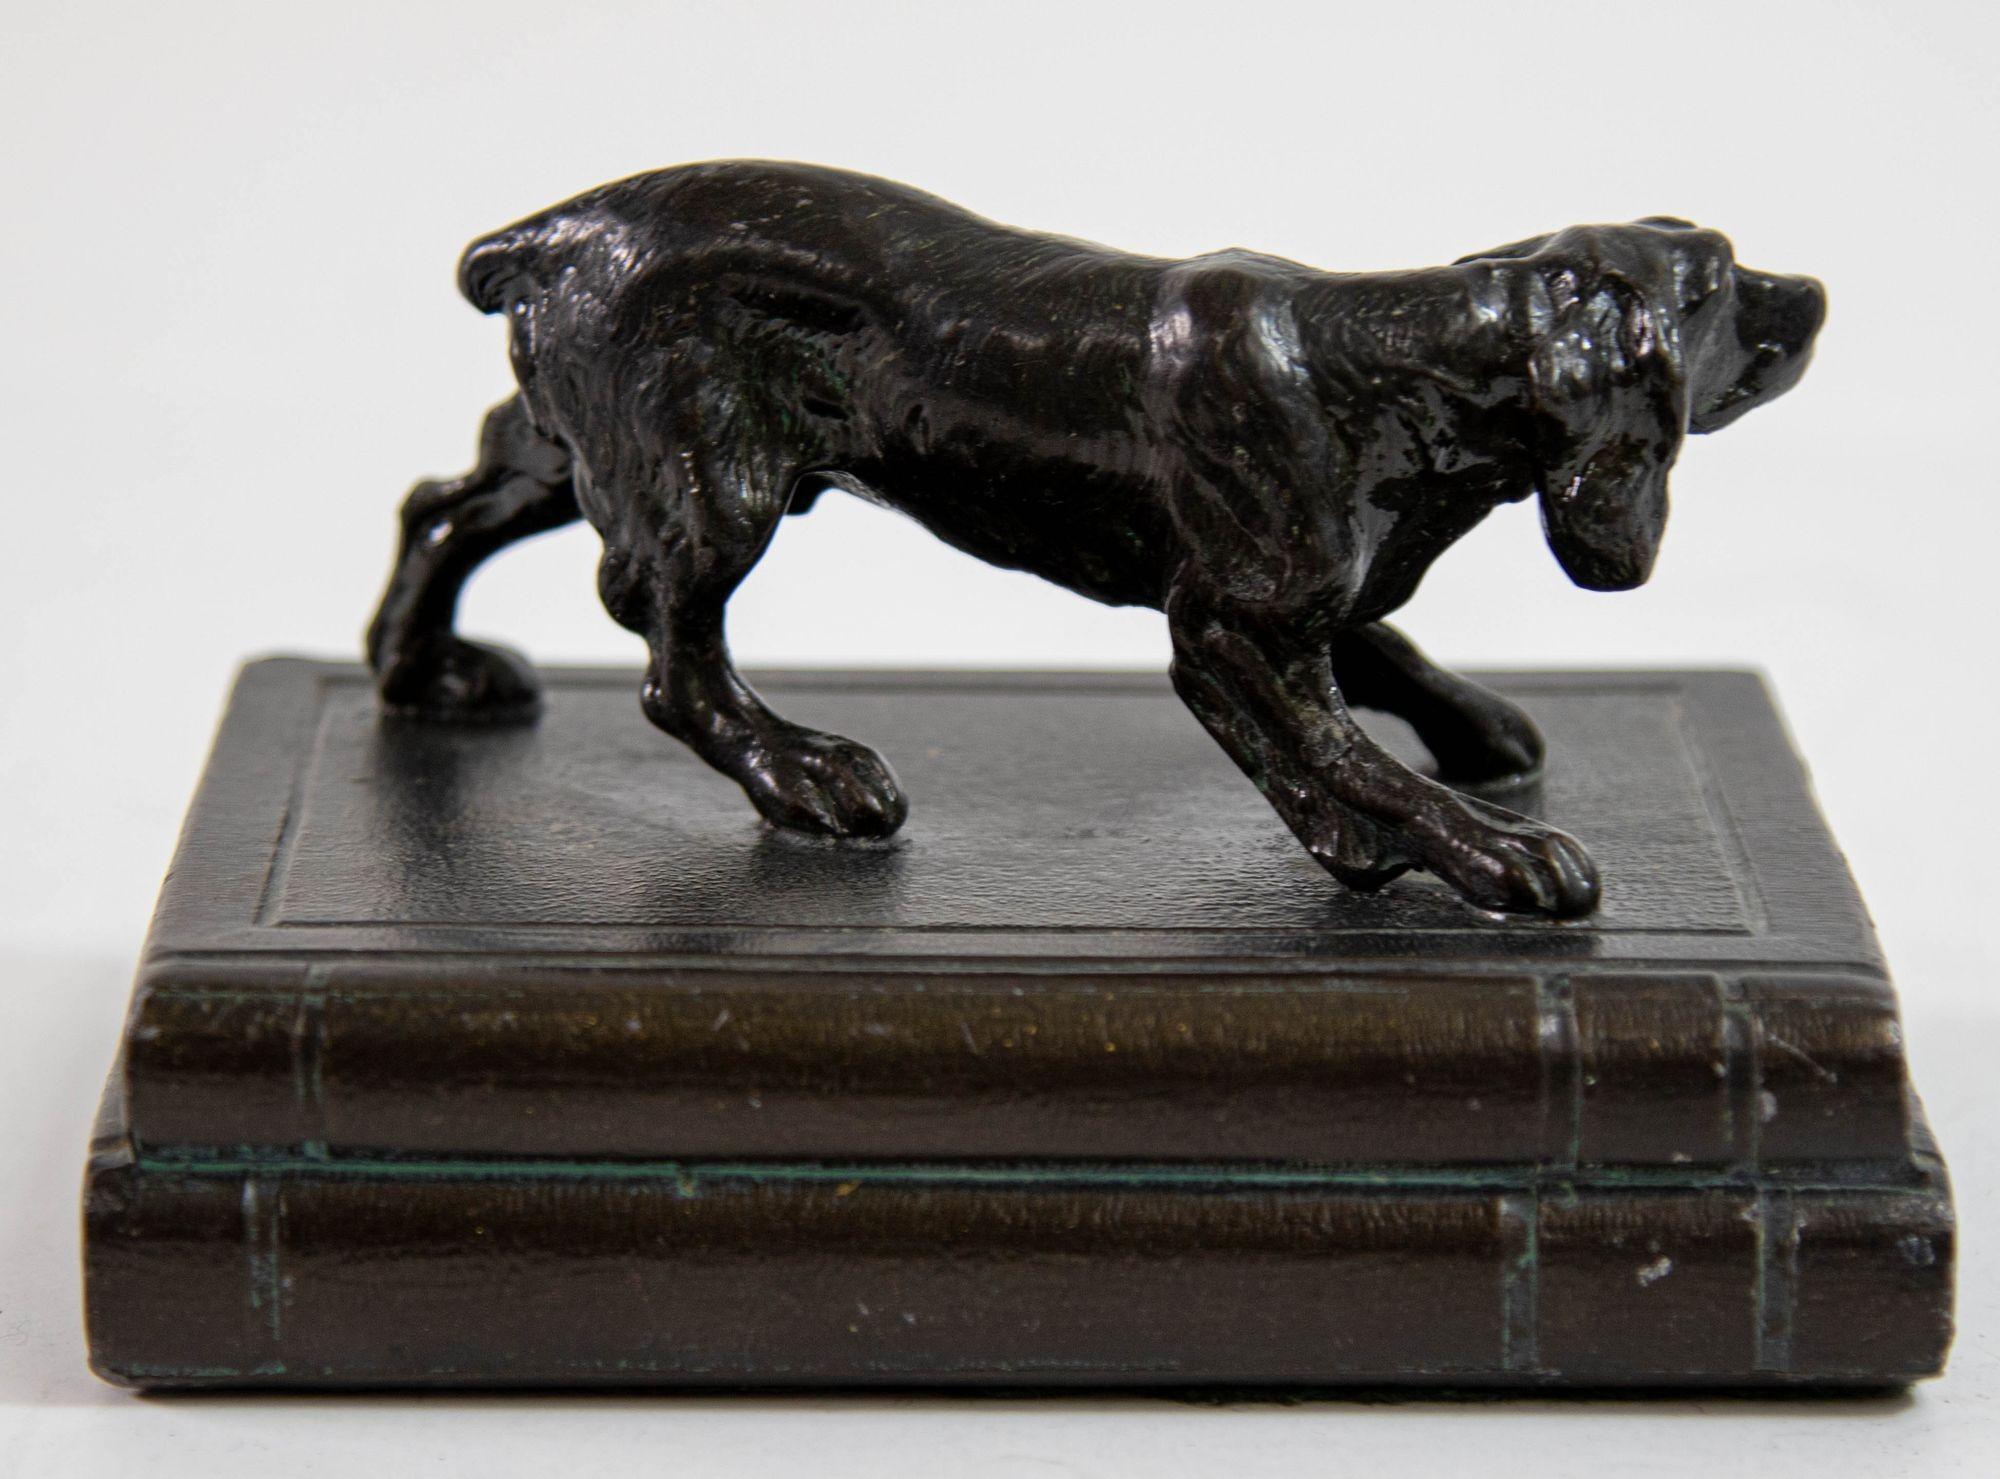 Sculpture en bronze d'un chien de chasse.Cette magnifique sculpture canine en bronze coulé représente un setter de chasse.Ancien serre-livre en bronze coulé, presse-papier, sculpture d'art décoratif, statue de chien figuratif.Debout, en posture